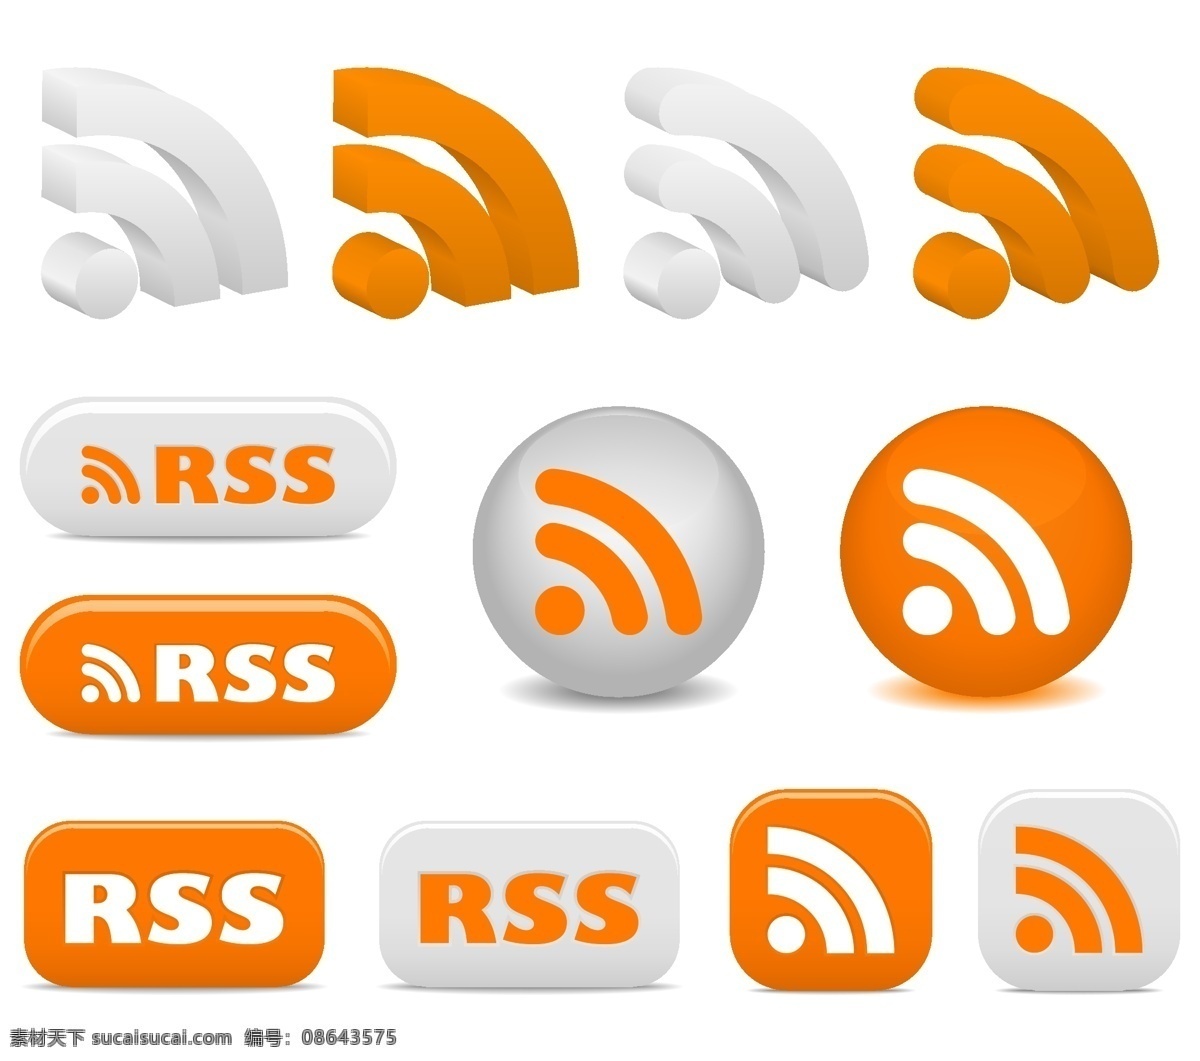 rss 订阅 图标 矢量 rss订阅 按钮 标记 网页元素 用户界面设计 圆 向量 其他矢量图